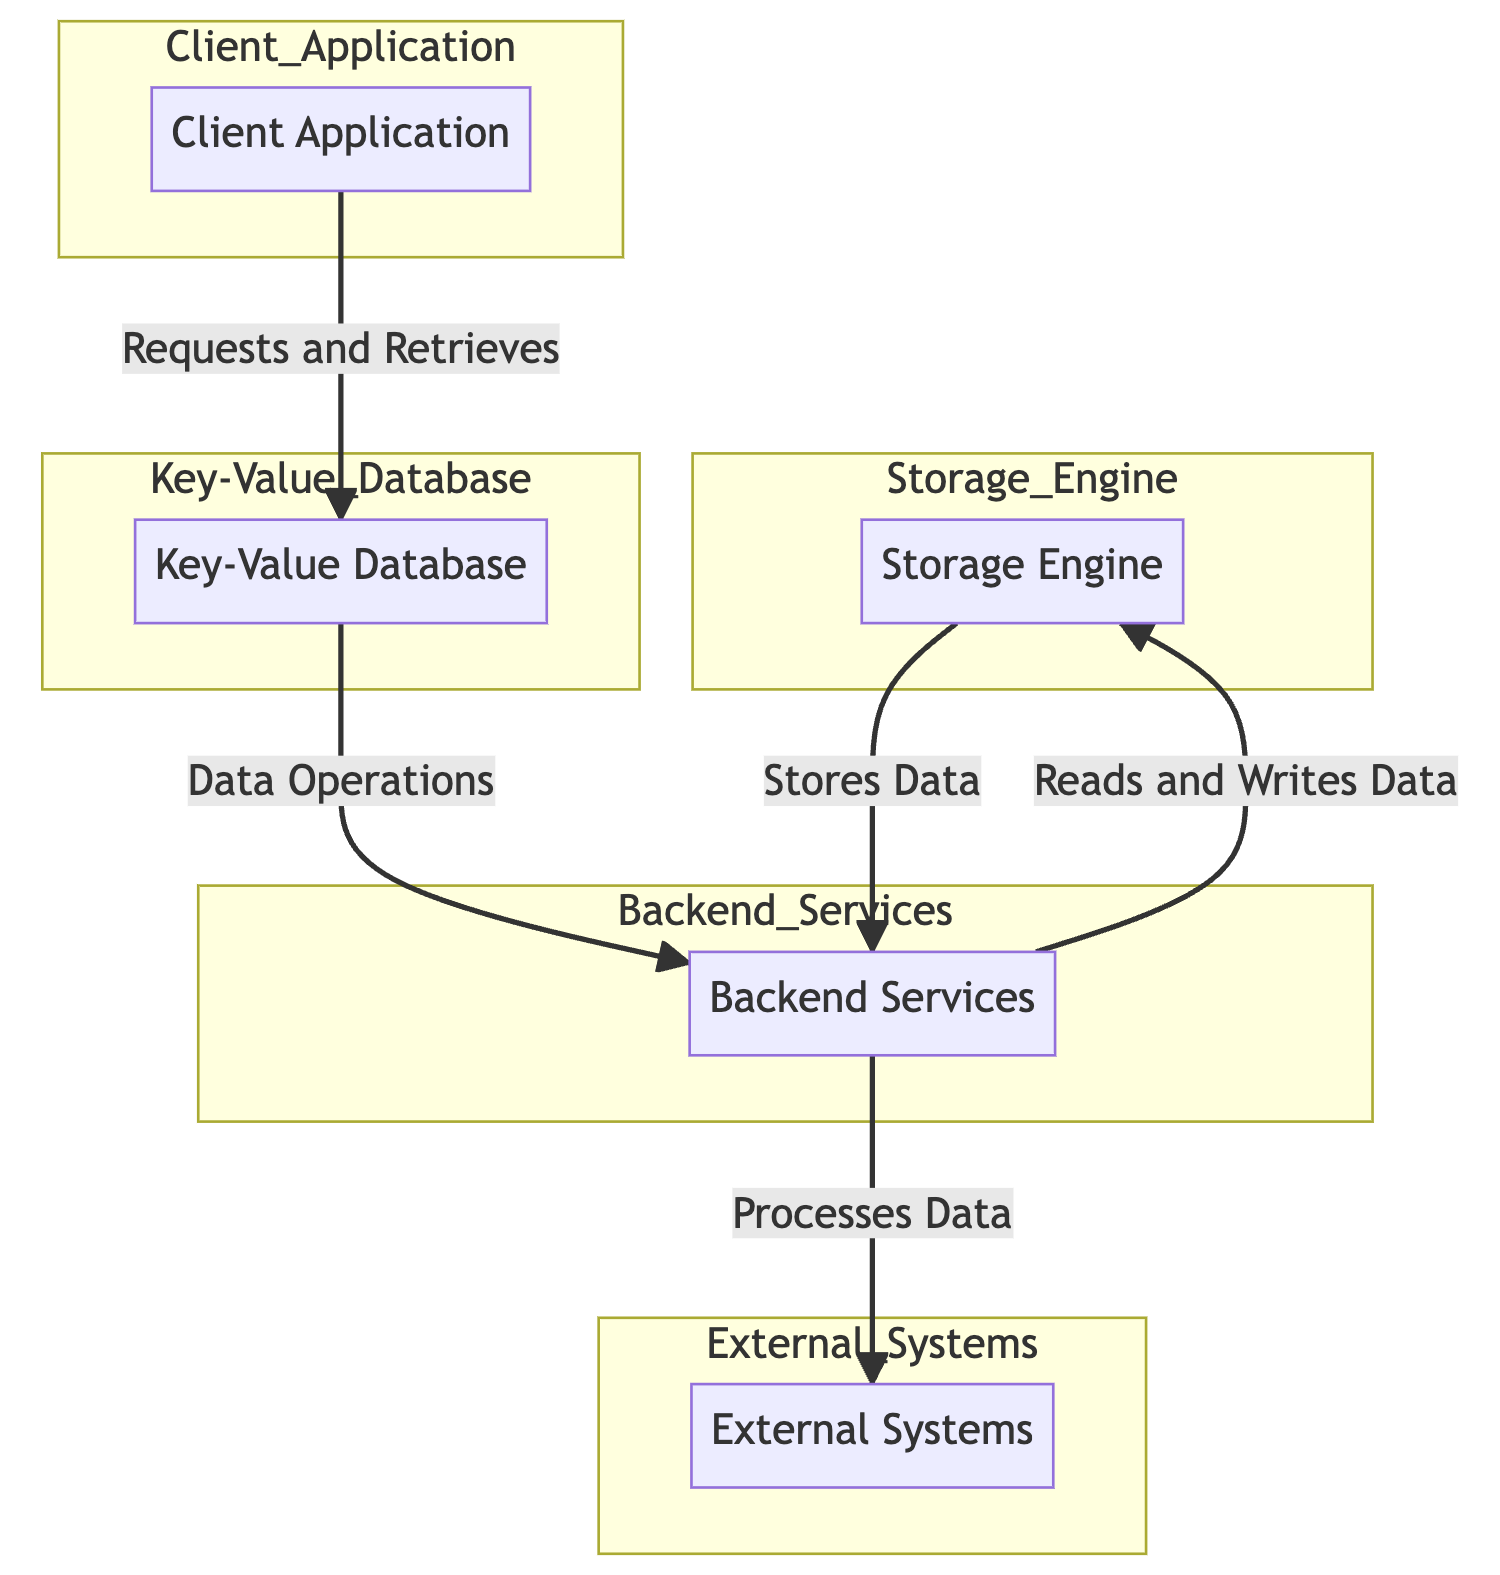 Key-Value Database Architecture